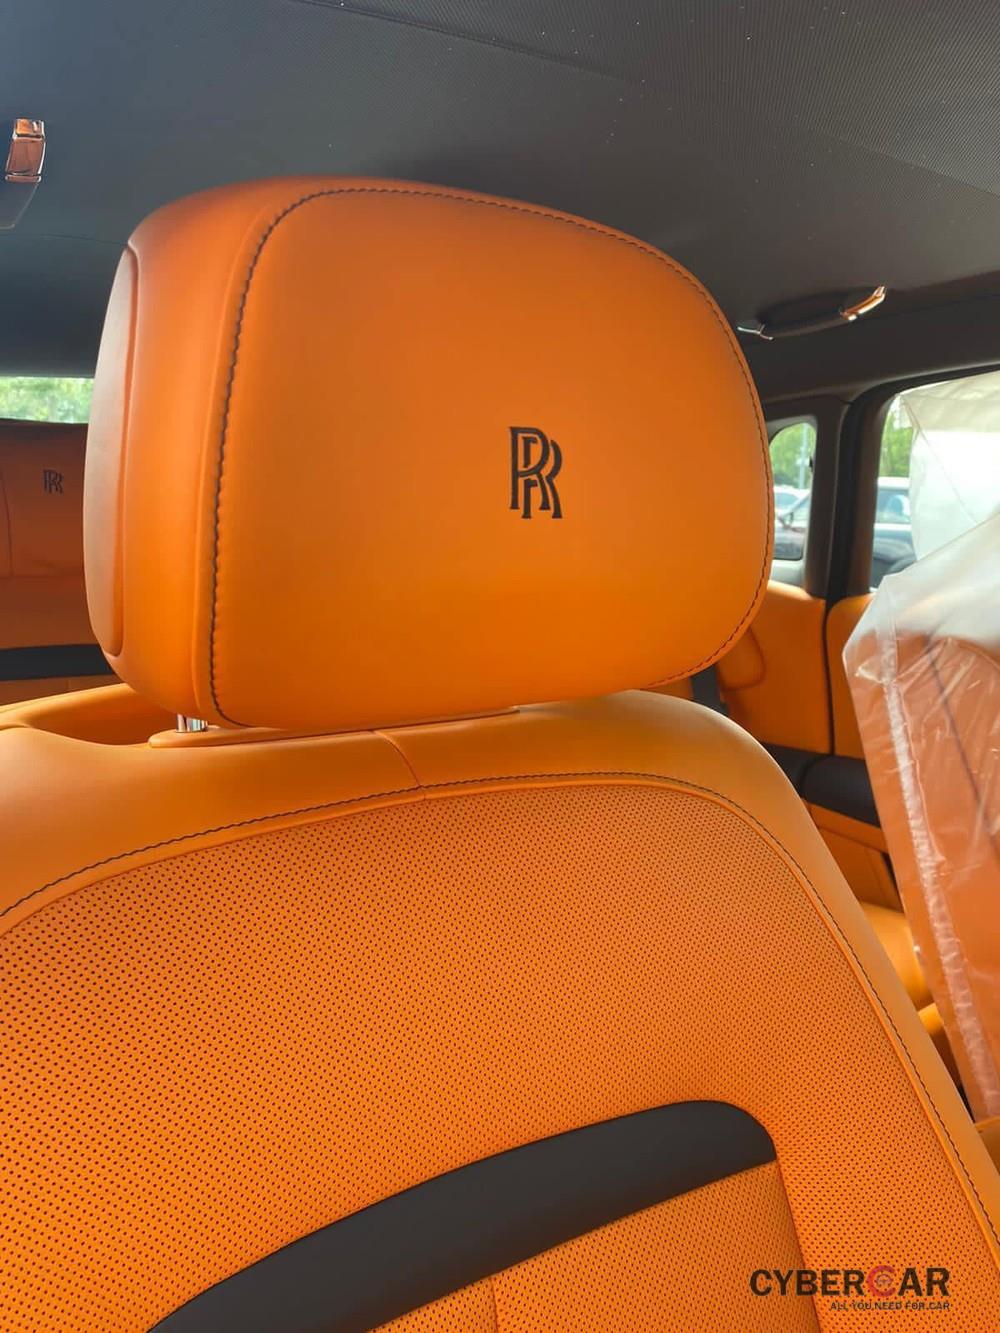 Cận cảnh màu cam Hermes trên chiếc xe Rolls-Royce Ghost thế hệ mới